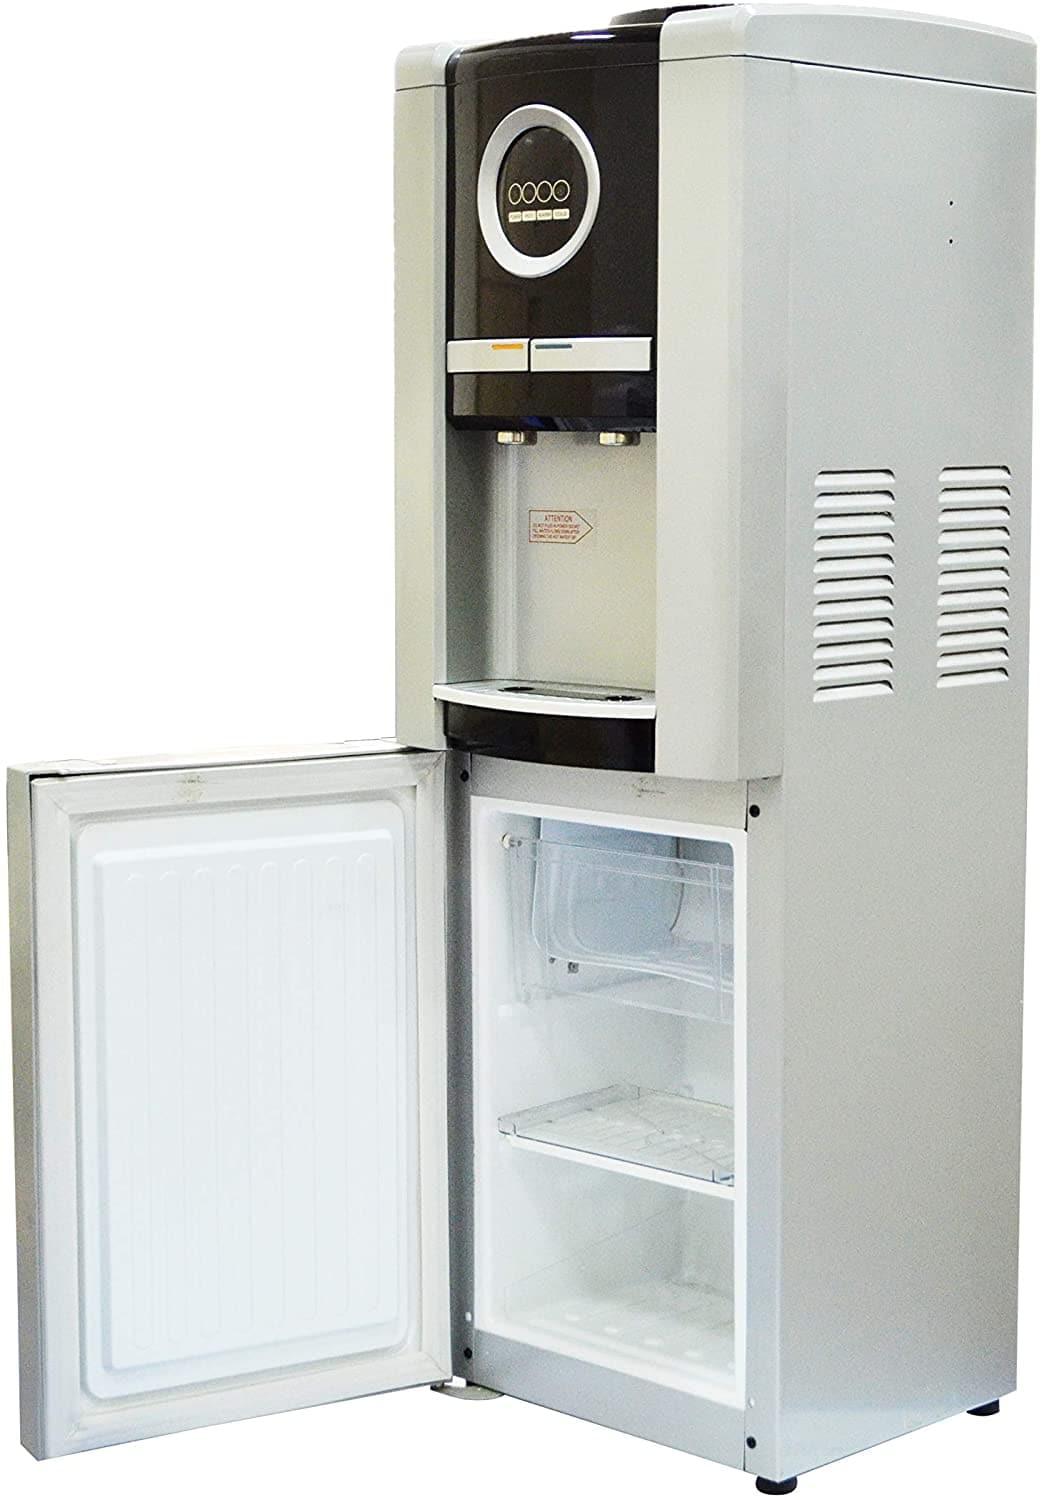 برادة ماء مع ثلاجة تحميل علوي صنبورين شور Sure Top Loading Water Dispenser With Refrigerator And Freezer